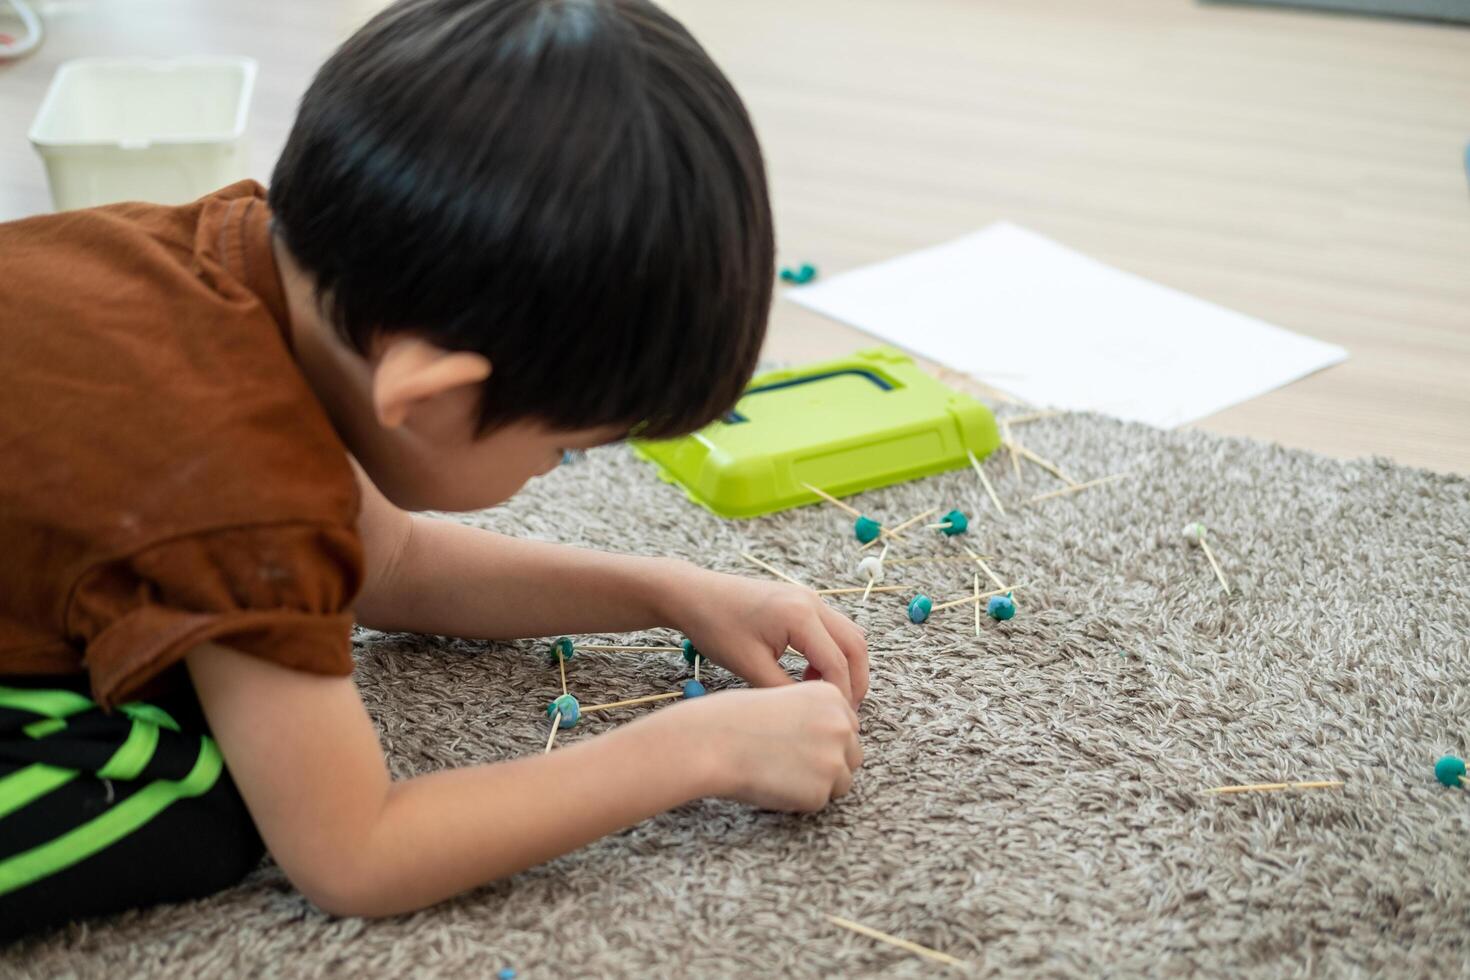 asiático chico jugando con arcilla de moldear en el habitación foto